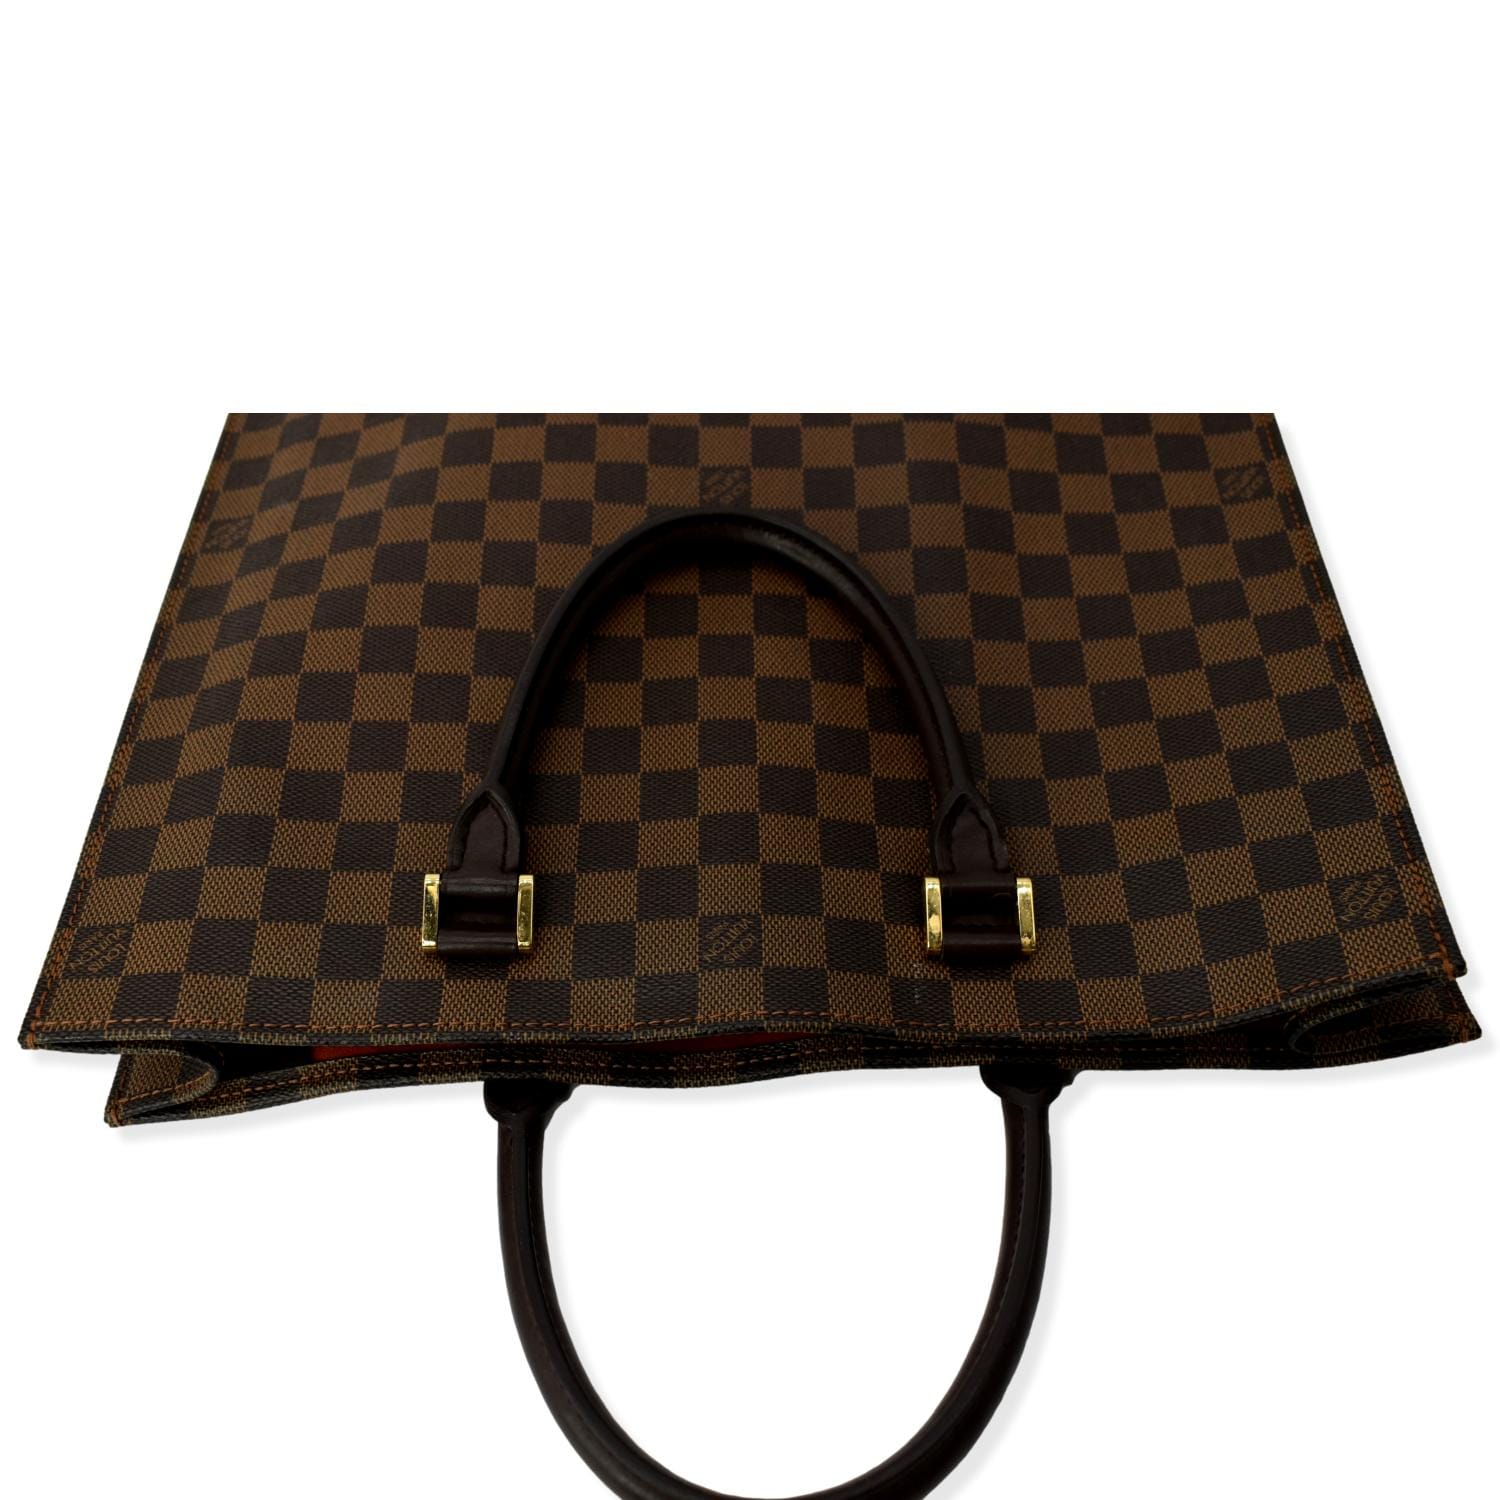 Brown Louis Vuitton Monogram Sac Plat Tote Bag – Designer Revival